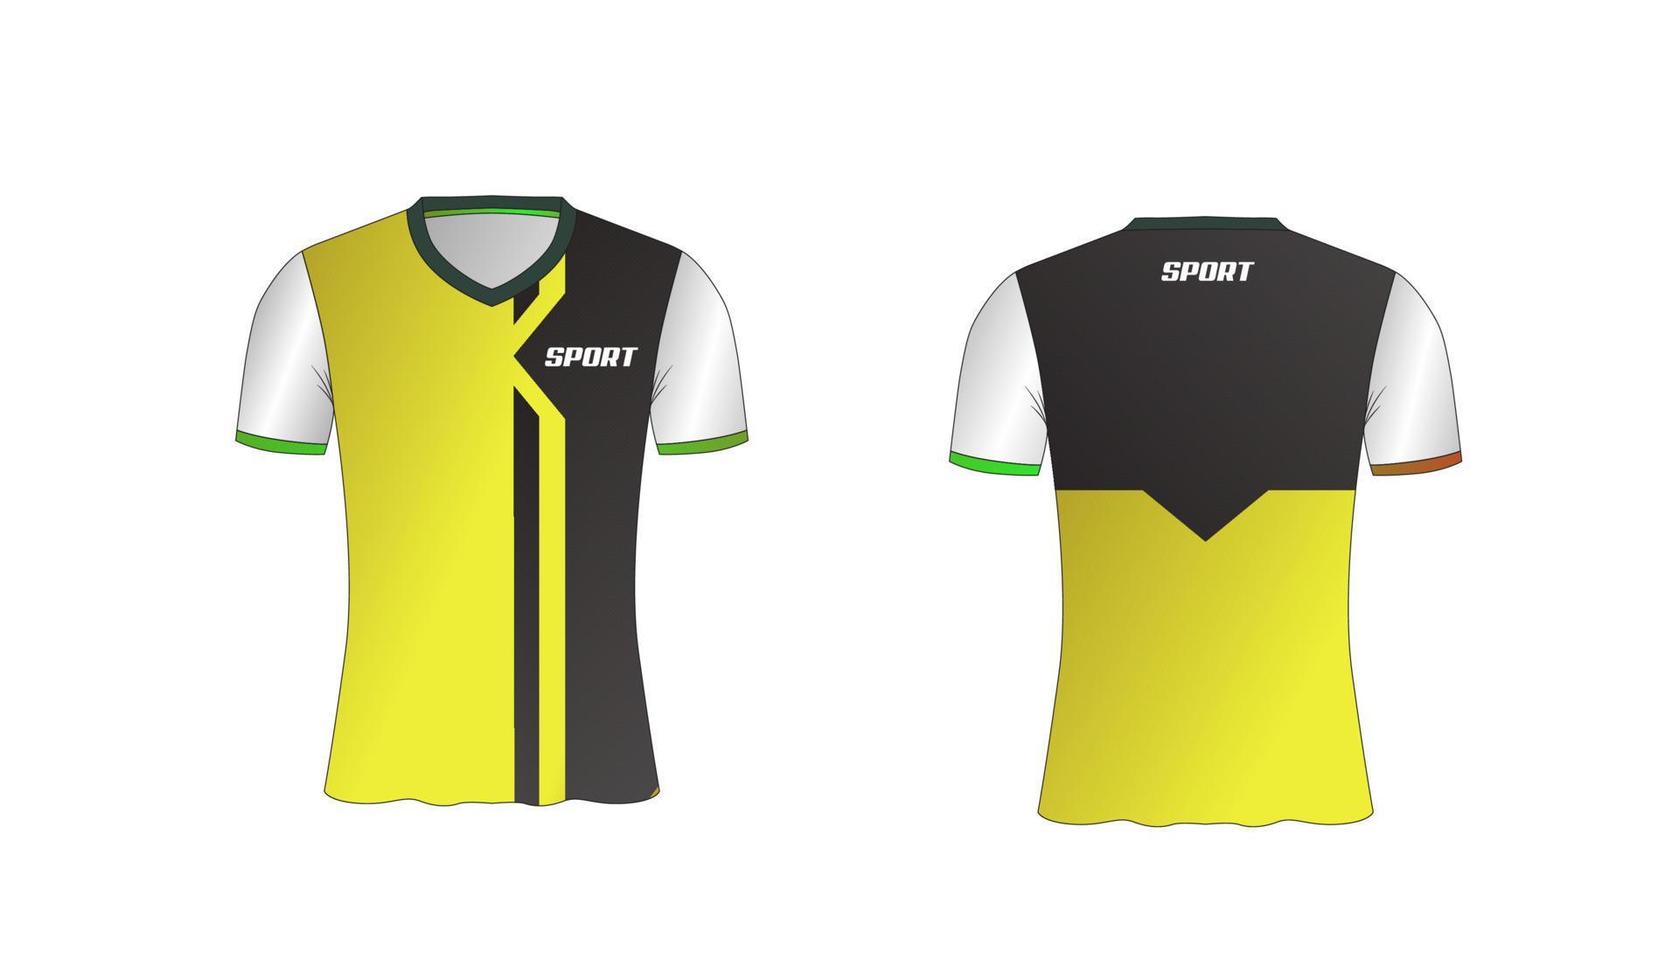 Jersey ist ein gemeines Sport-T-Shirt-Design für Fußball-, Basketball- und Volleyballmannschaften vektor